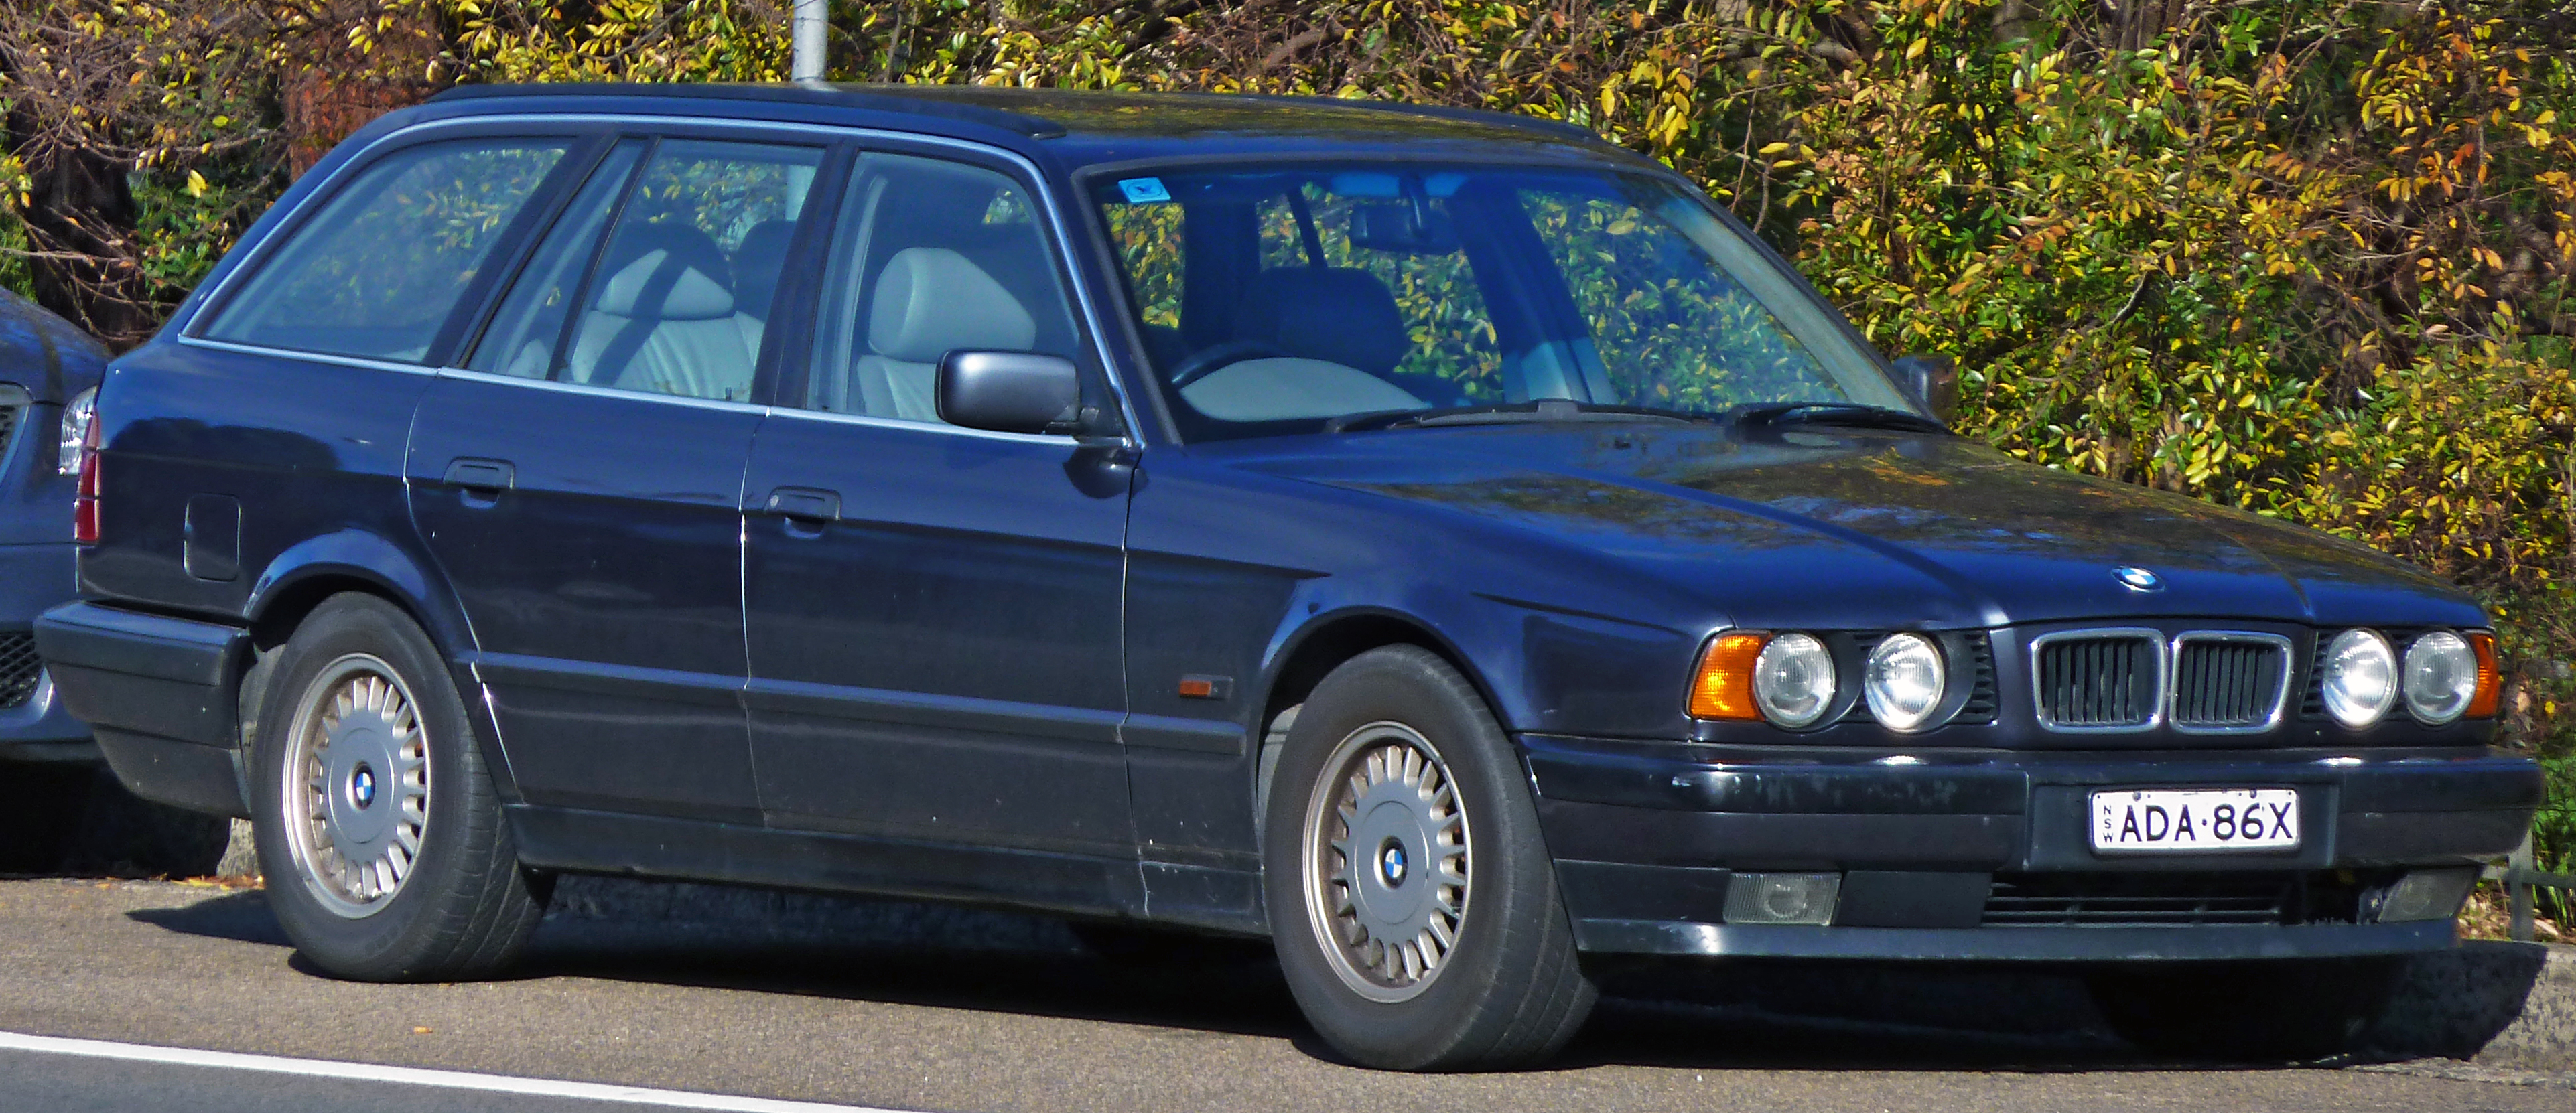 File:1994-1996 BMW 525i (E34) Touring 01.jpg